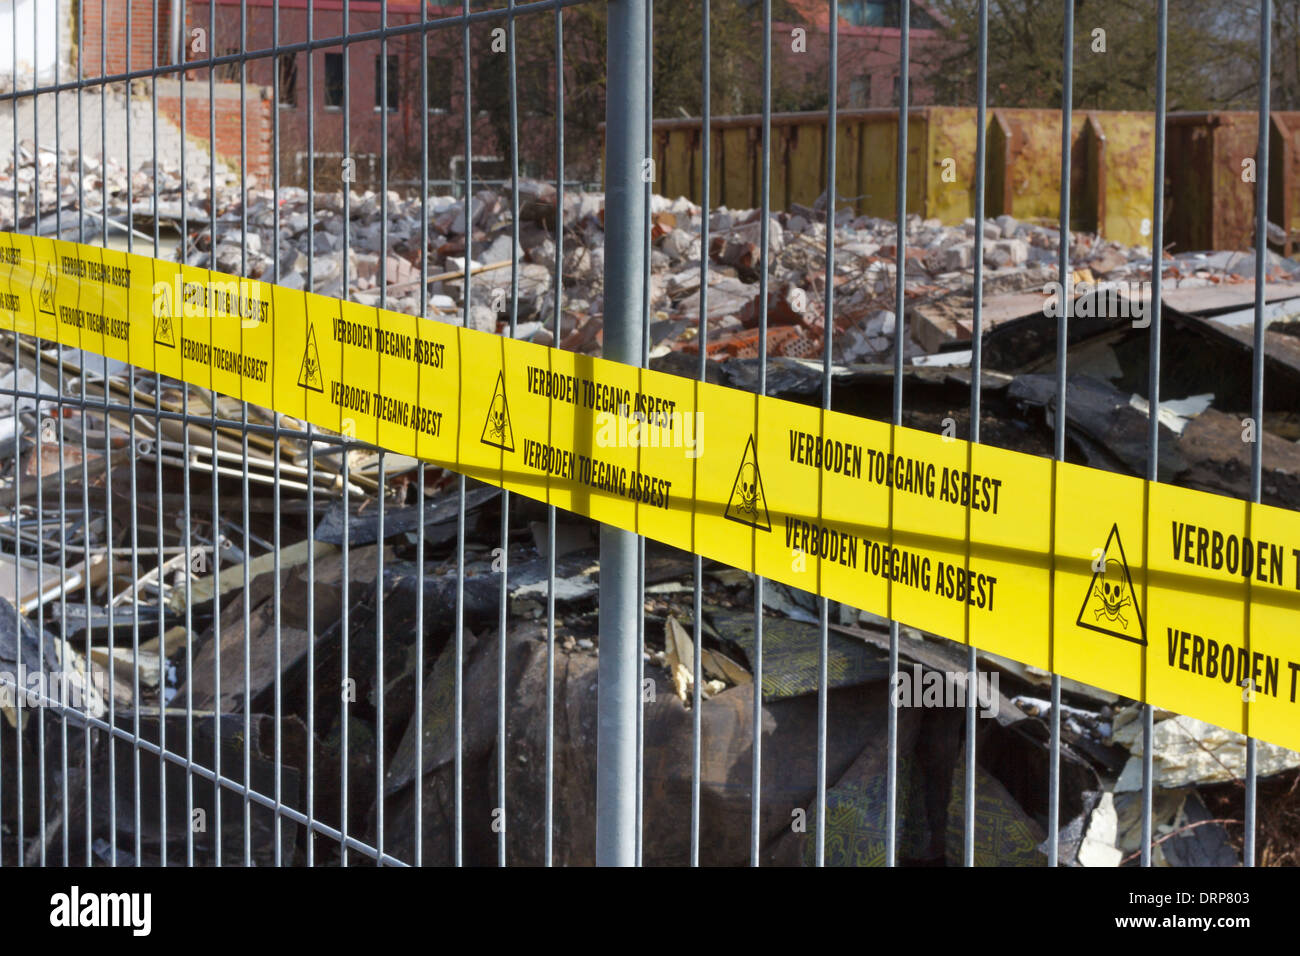 Gelb keine Trespassing Band für Asbest in niederländischer Sprache am Eingang des kontaminierten Gelände Stockfoto